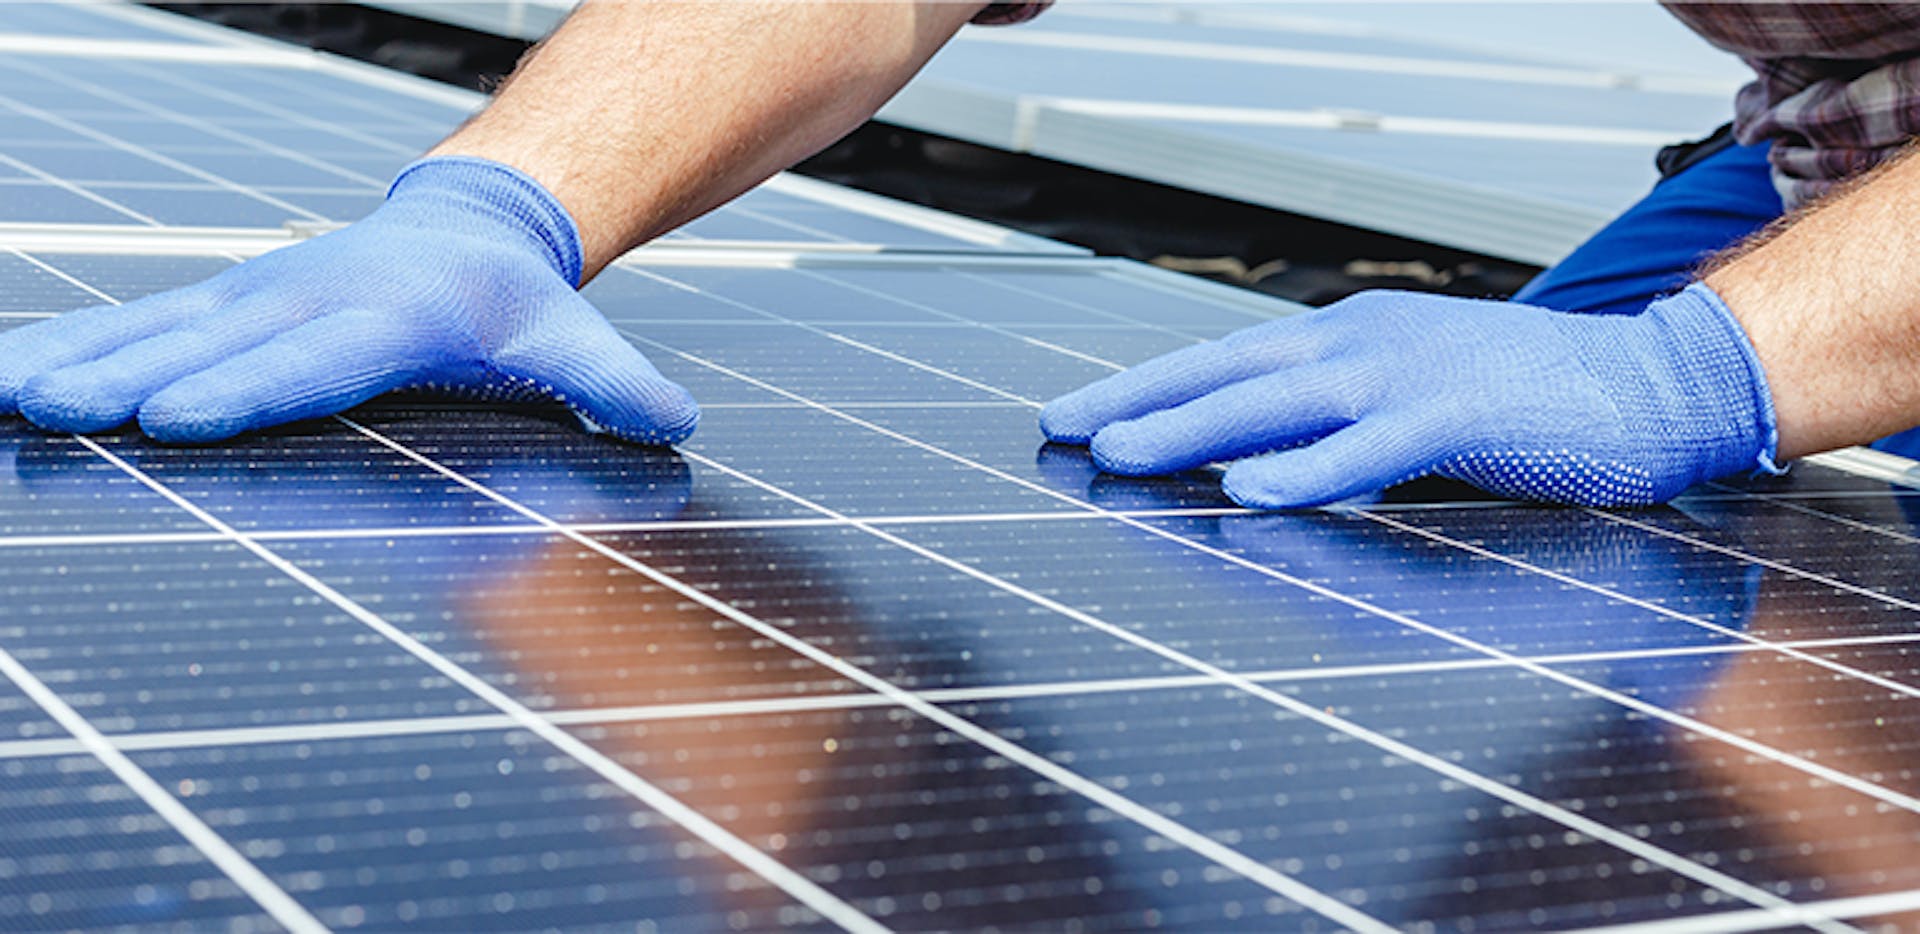 Ce nouveau kit solaire vous permettra d'installer vous-mêmes des